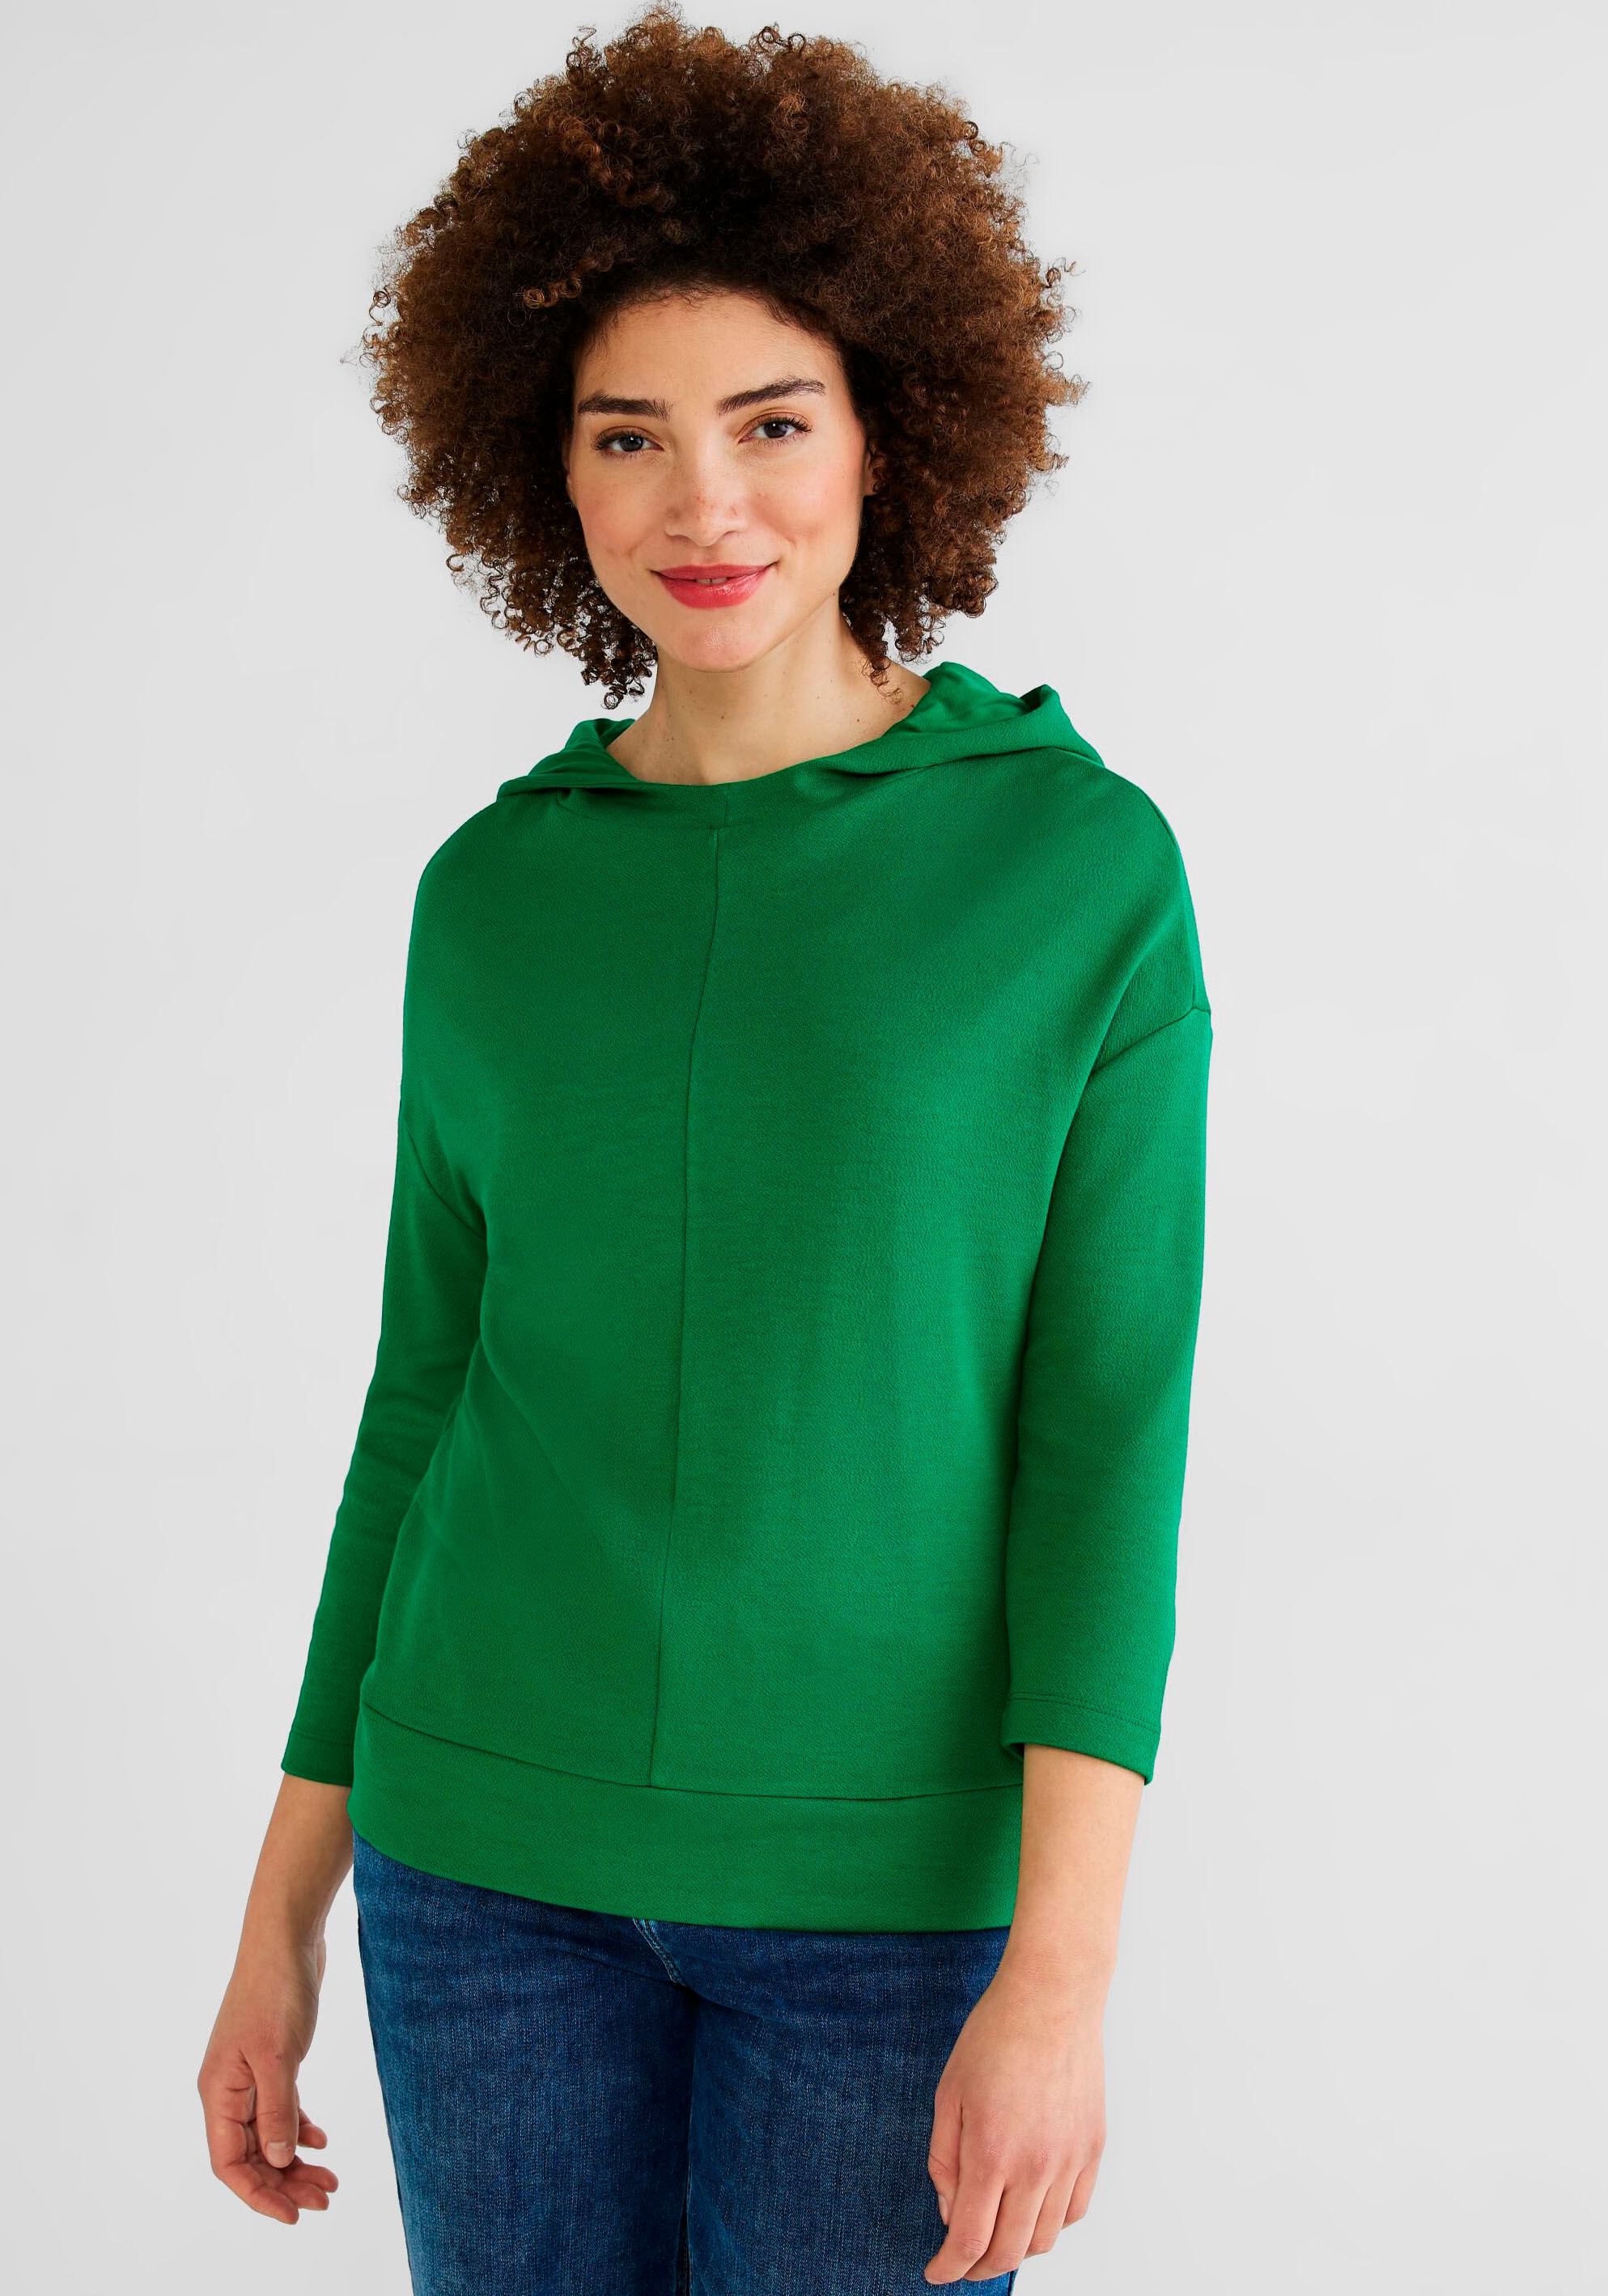 OTTO im im Cecil Shop Online kaufen Longsweatshirt, Tunikastyle